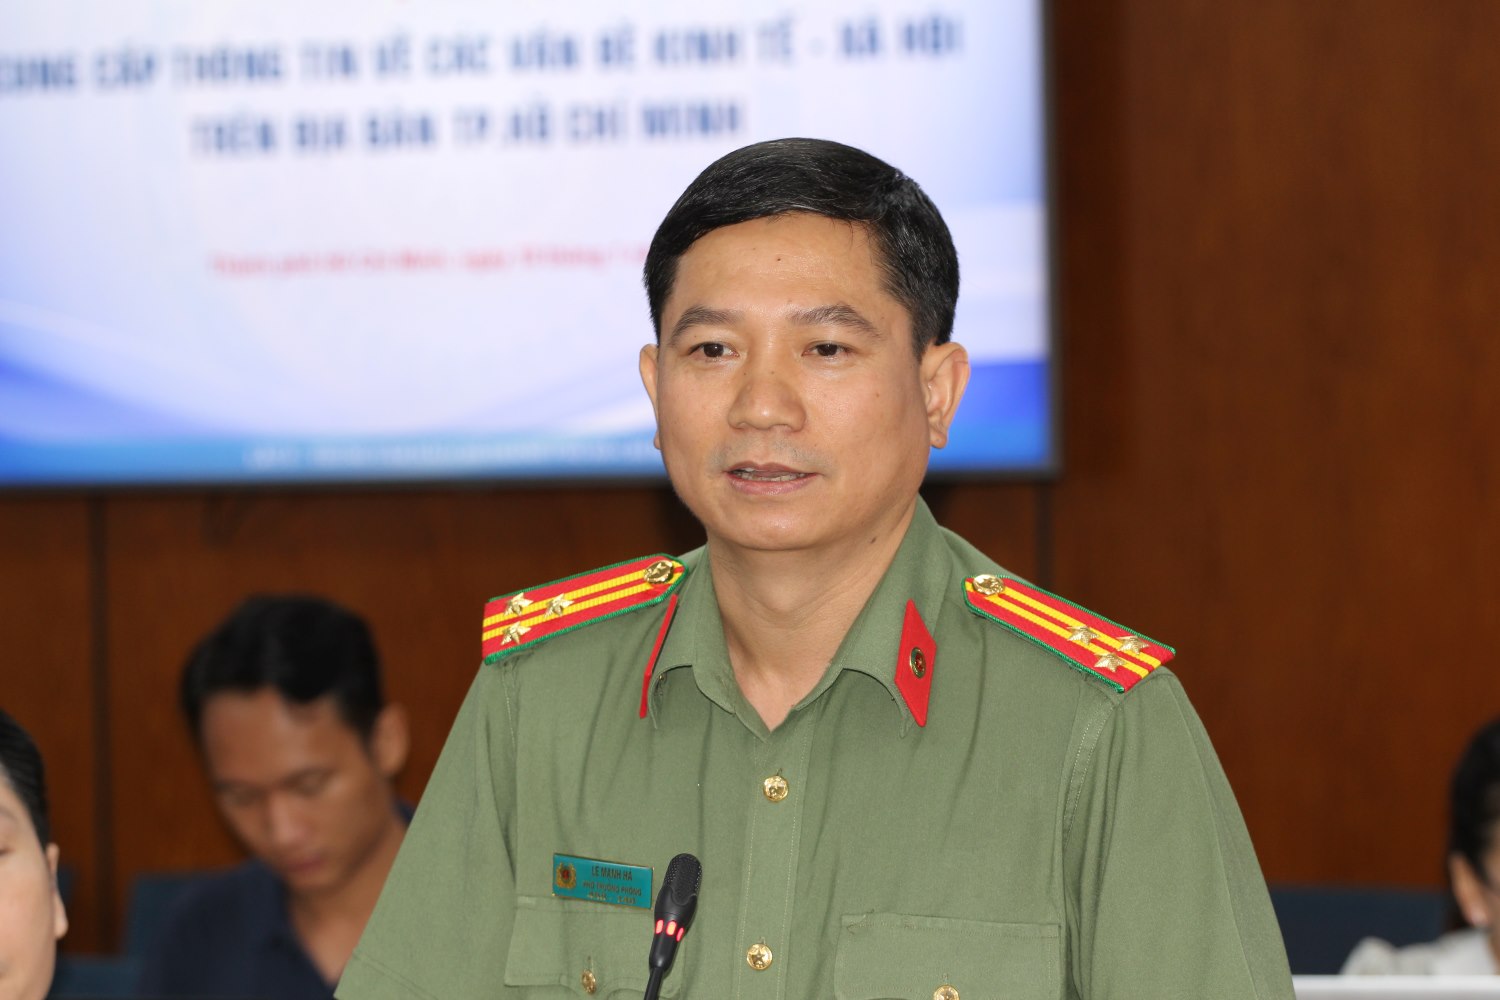 hượng tá Lê Mạnh Hà - Phó trưởng Phòng Tham mưu Công an TPHCM. Ảnh: Thành Nhân